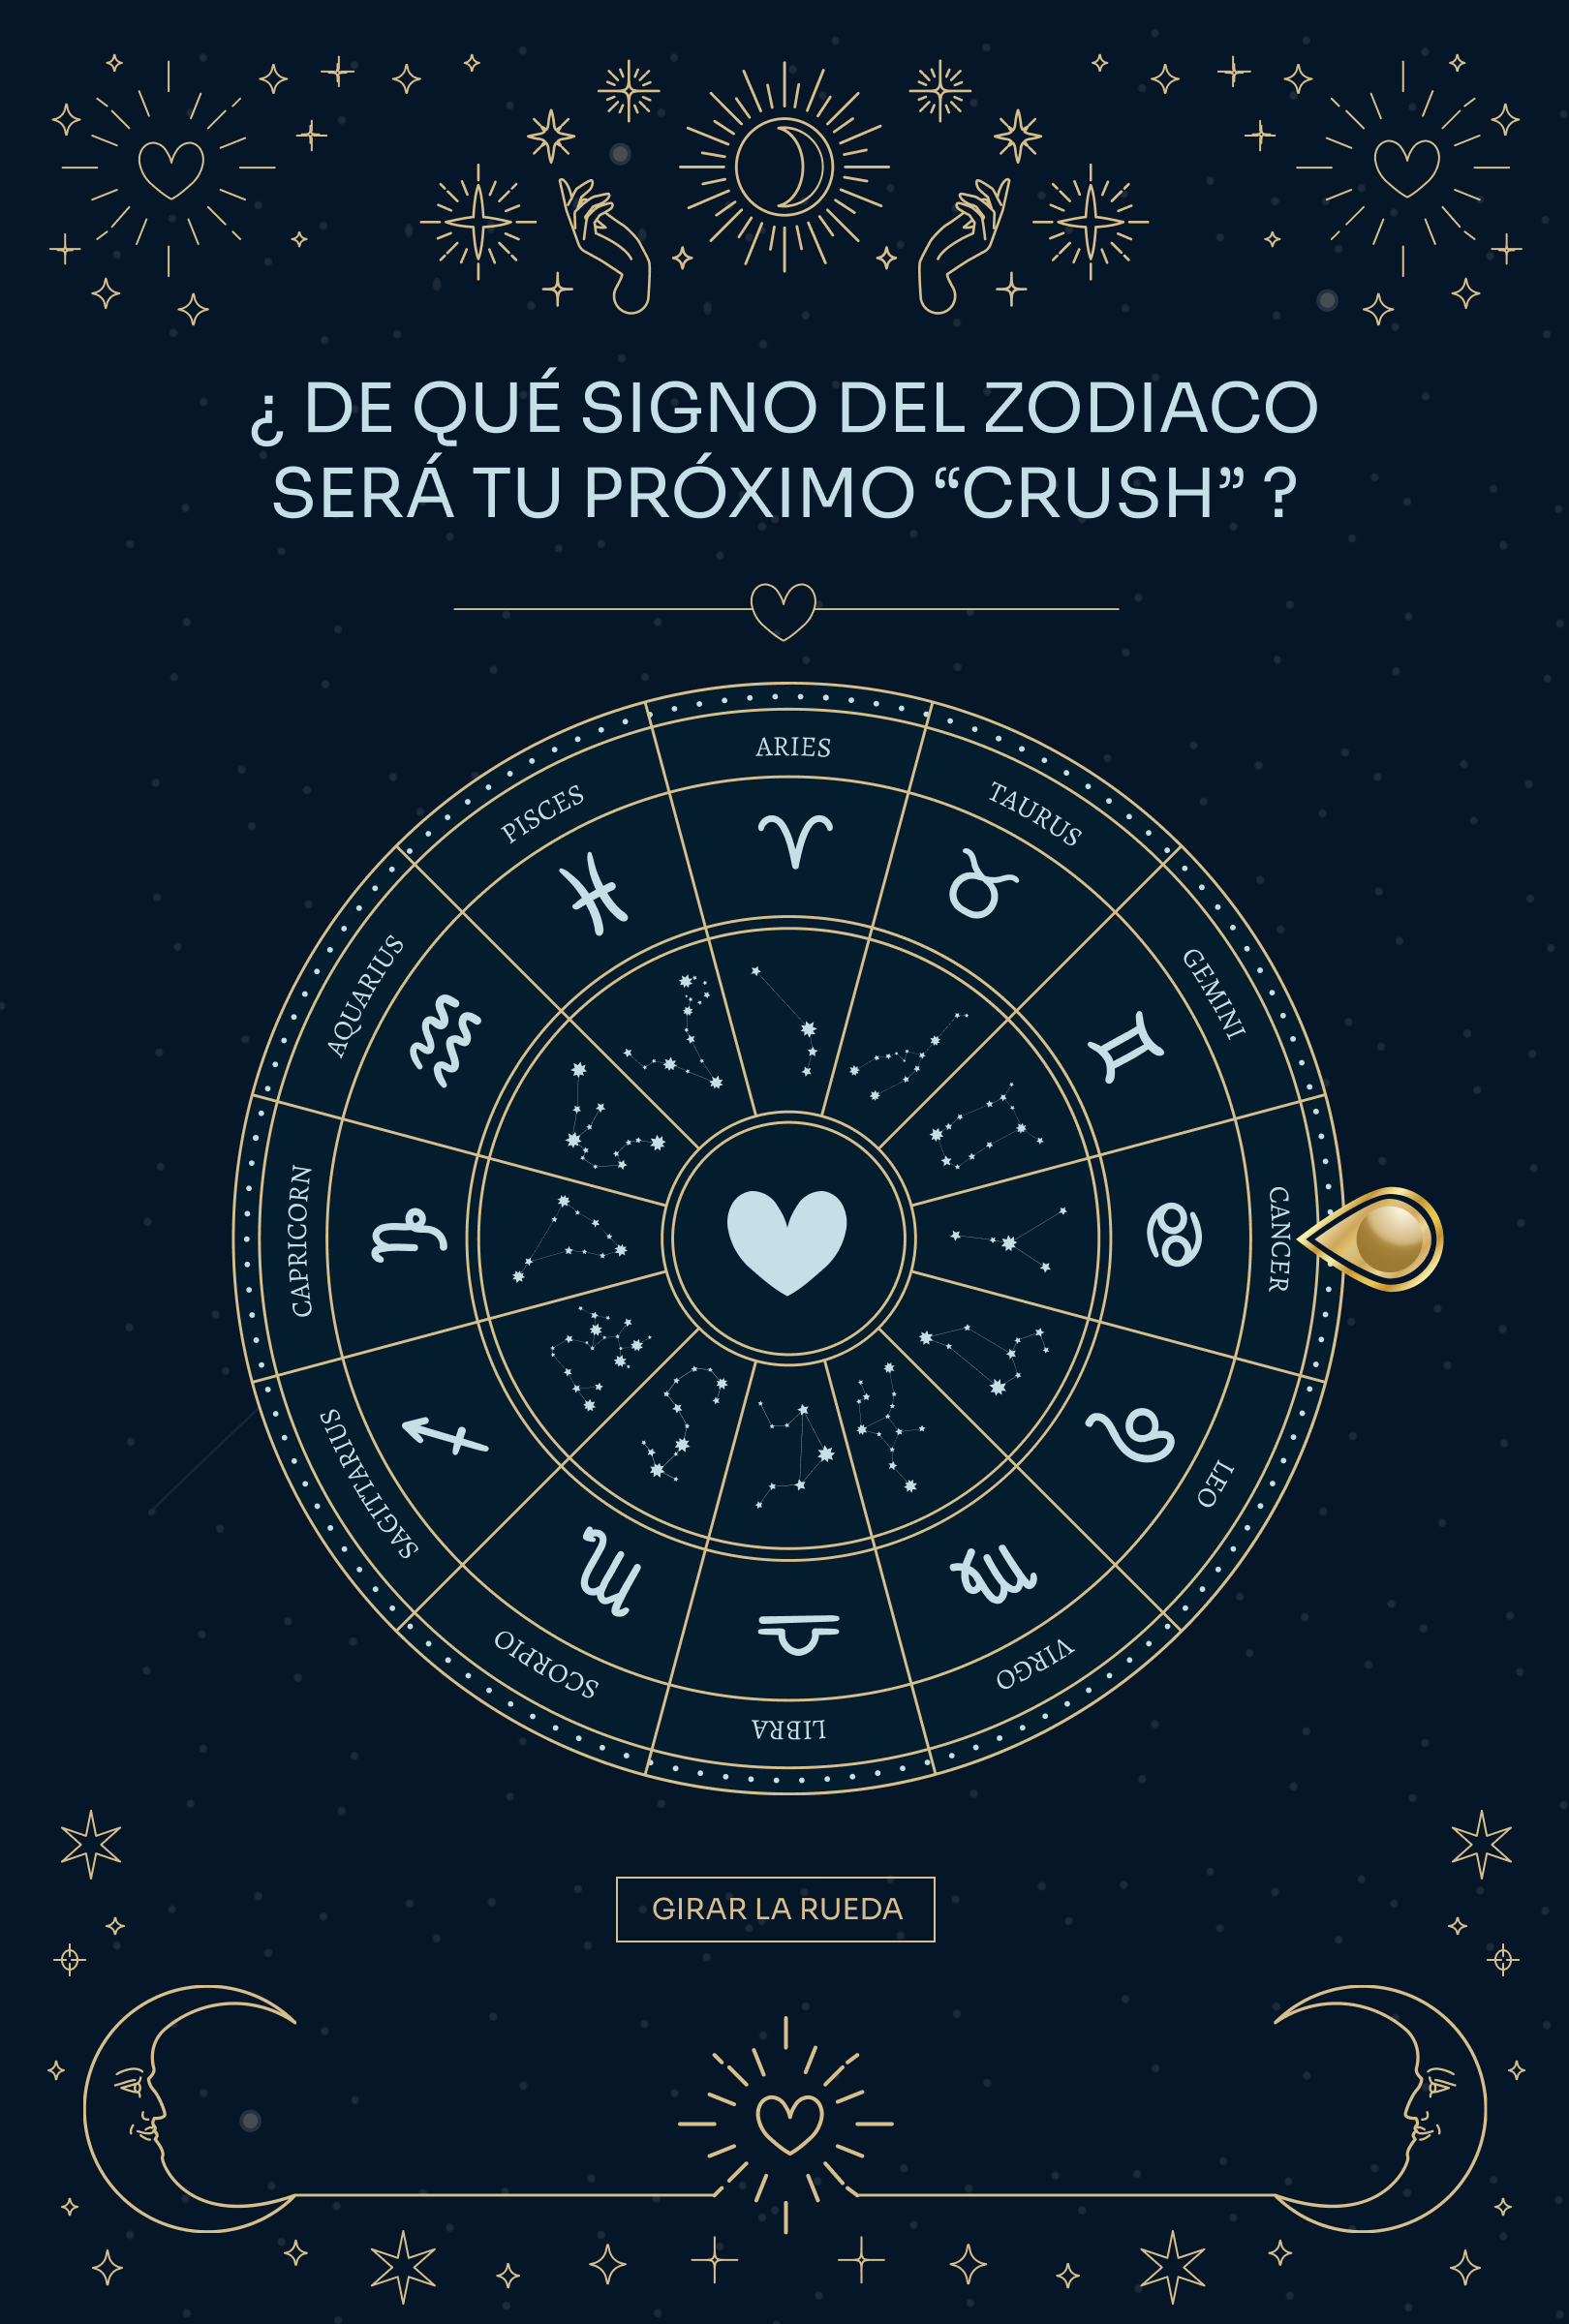 acciones-marketing-san-valentin-wheel-of-fortune